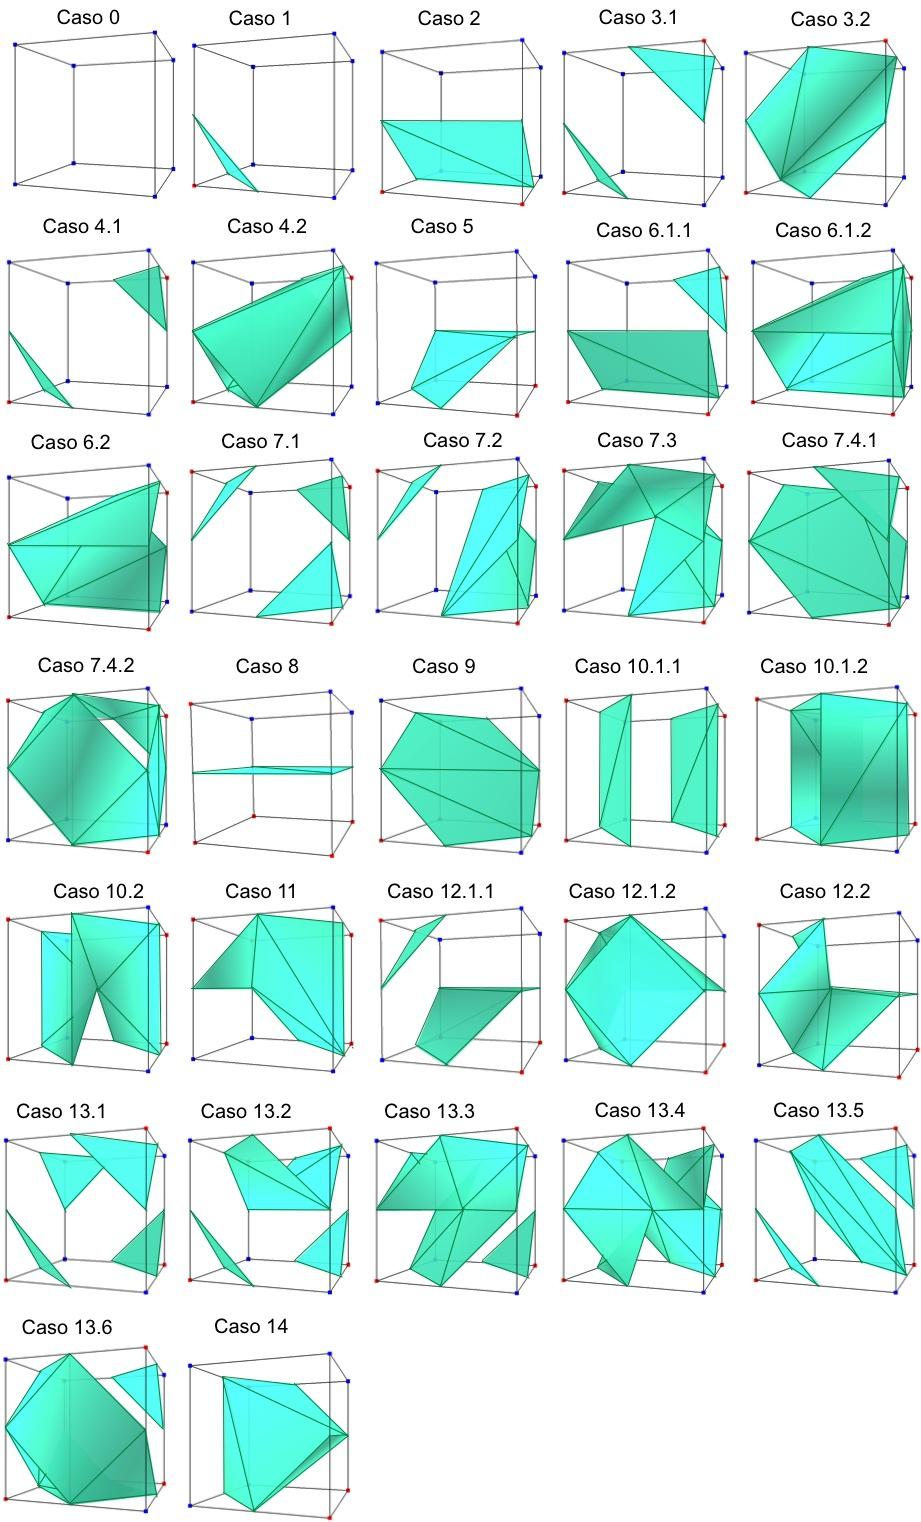 6 sibilidade de o caso 7 possuir dois pontos críticos no interior do cubo, o que resulta em incoerências topológicas na malha gerada. Figura 7: Tabela de triangulação proposta por Chernyaev.